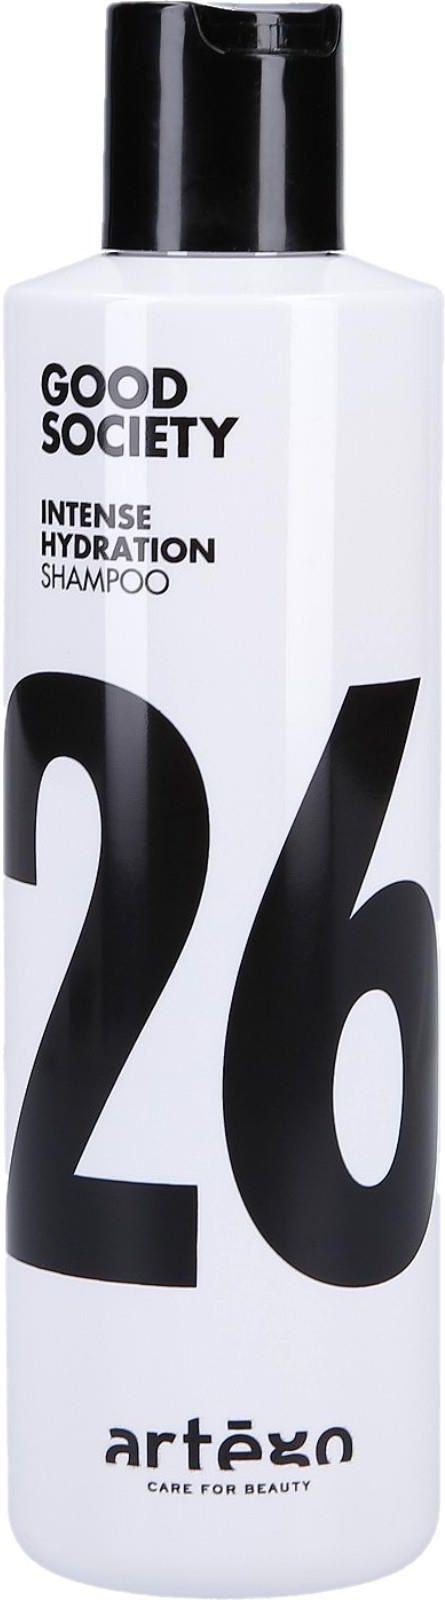 szampon artego 51 opinie